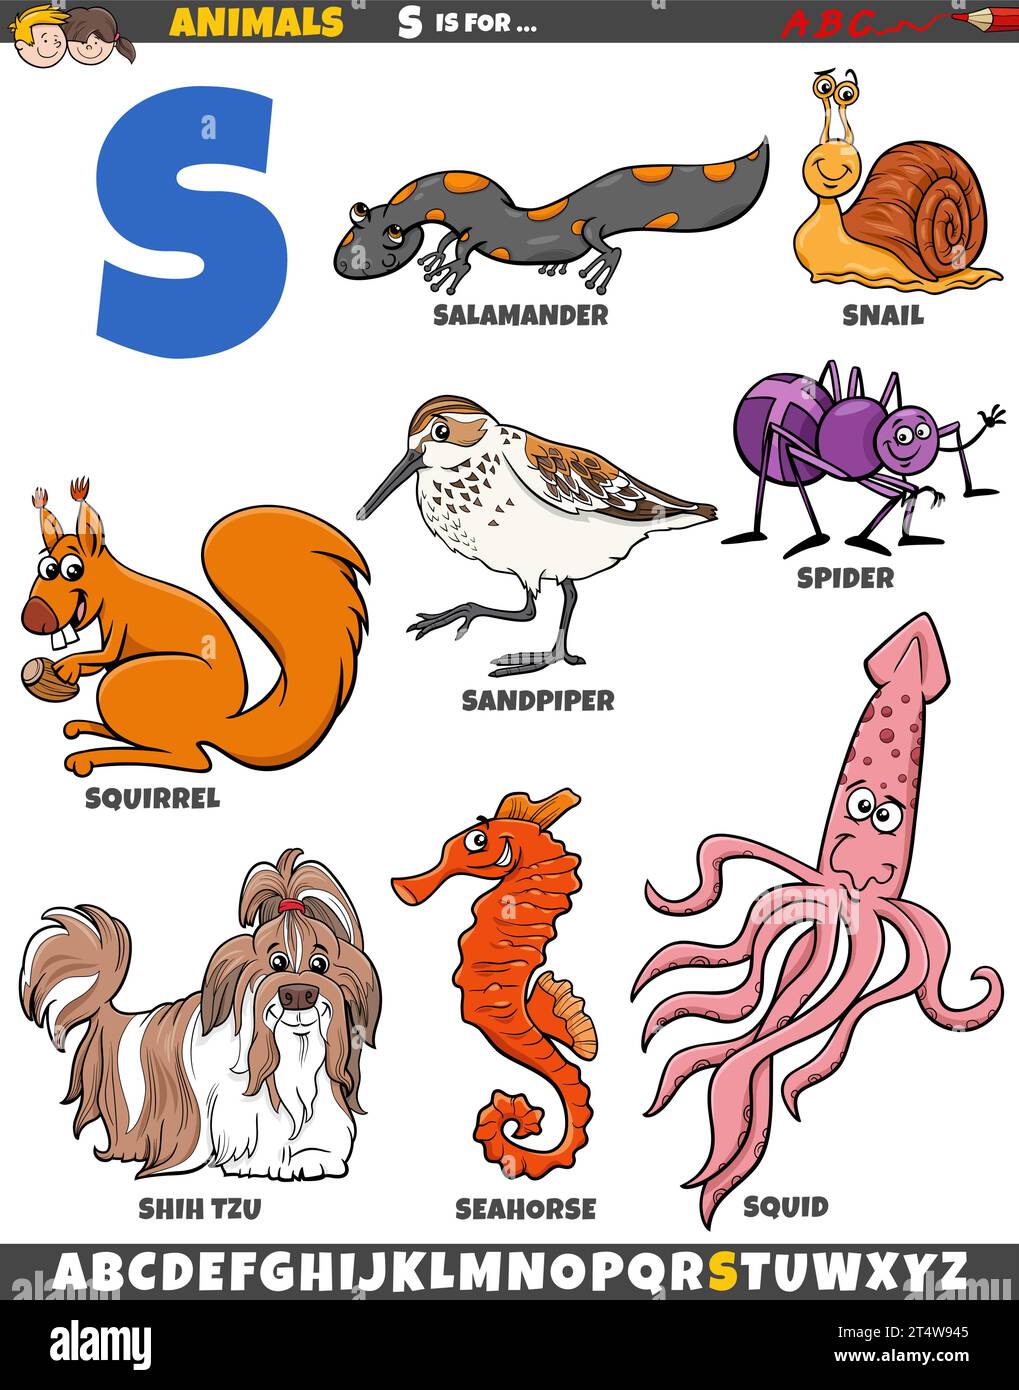 Zeichentrickillustration von Tierfiguren, die für den Buchstaben S gesetzt wurden Stock Vektor